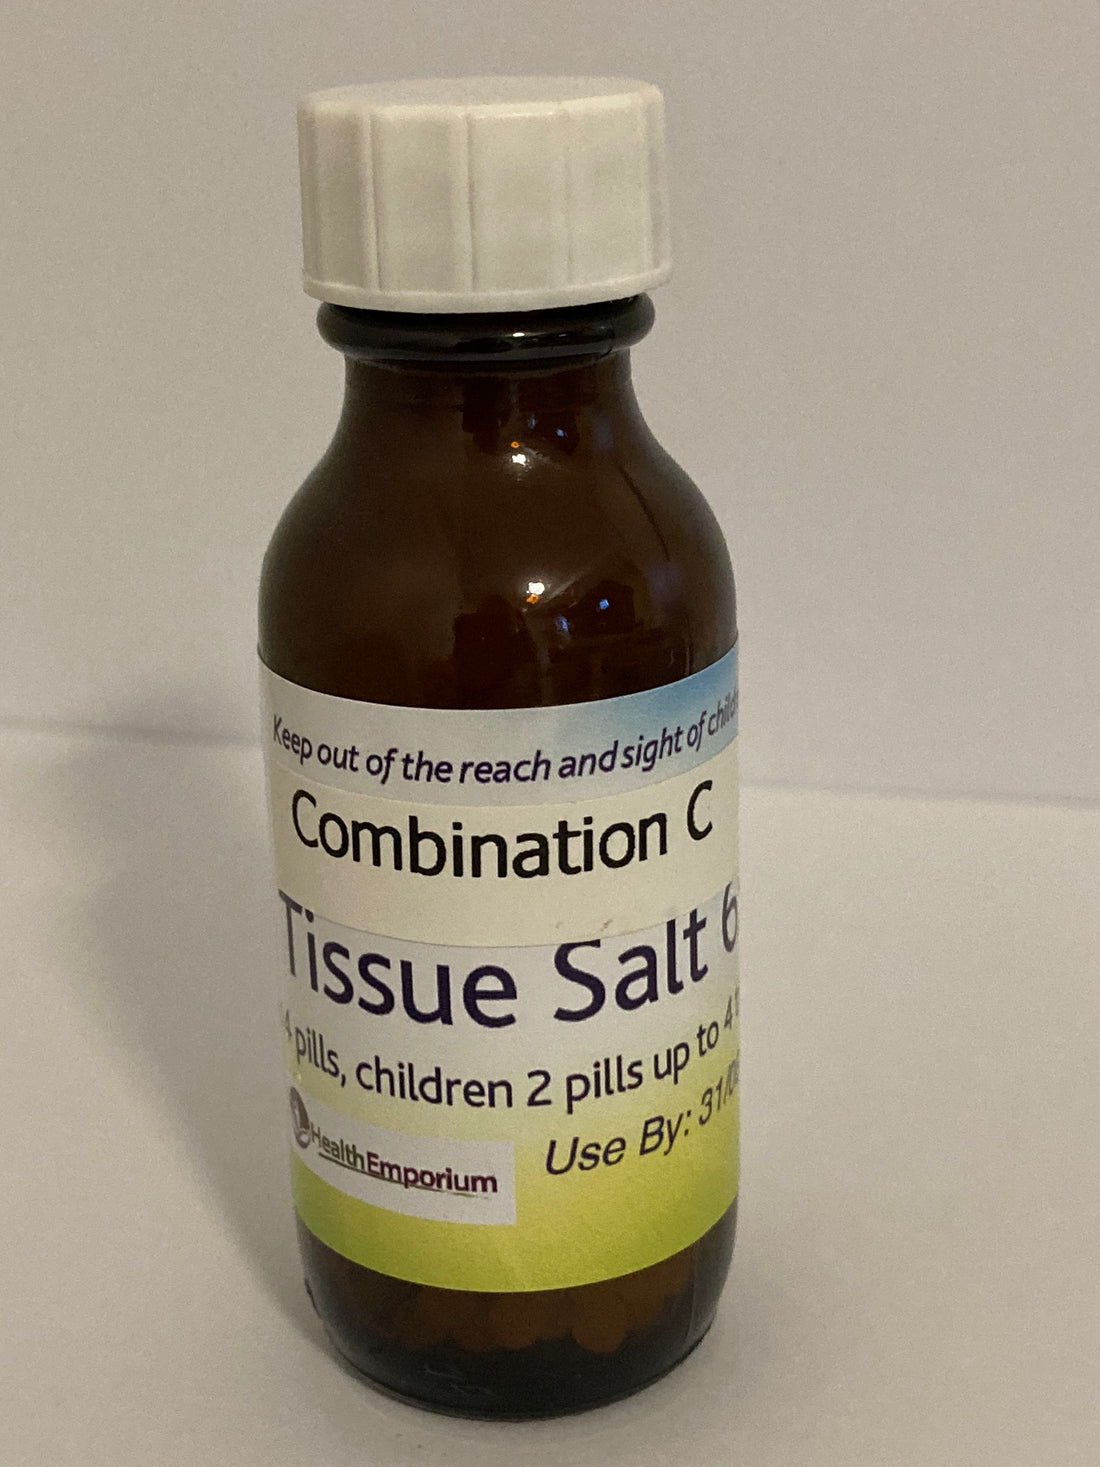 Combination C Tissue Salt